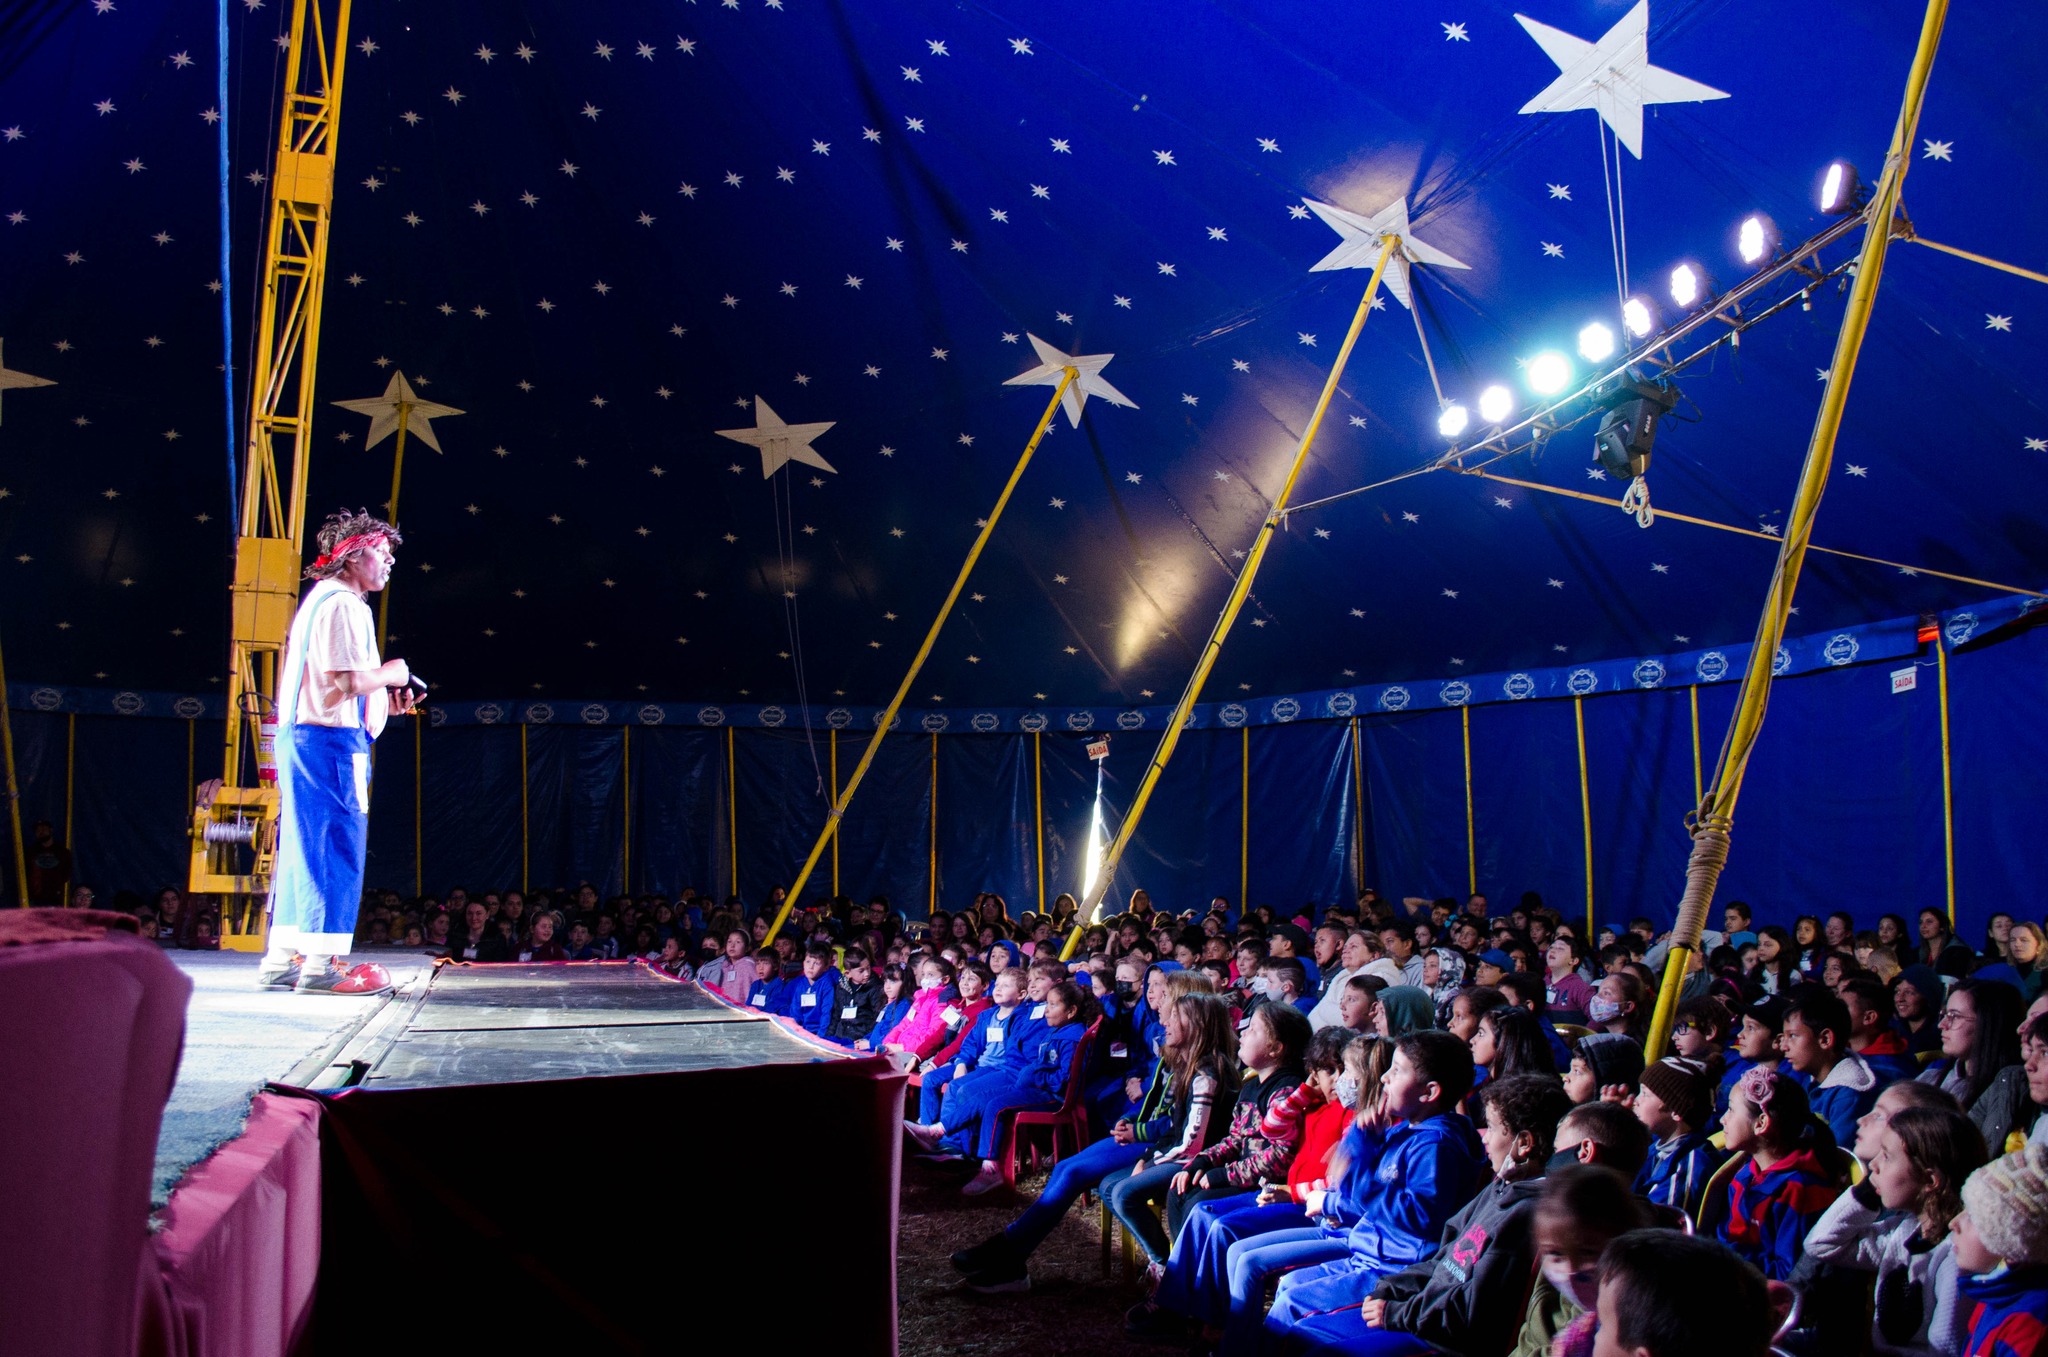 Projeto da Prefeitura leva 4.000 crianças gratuitamente ao circo